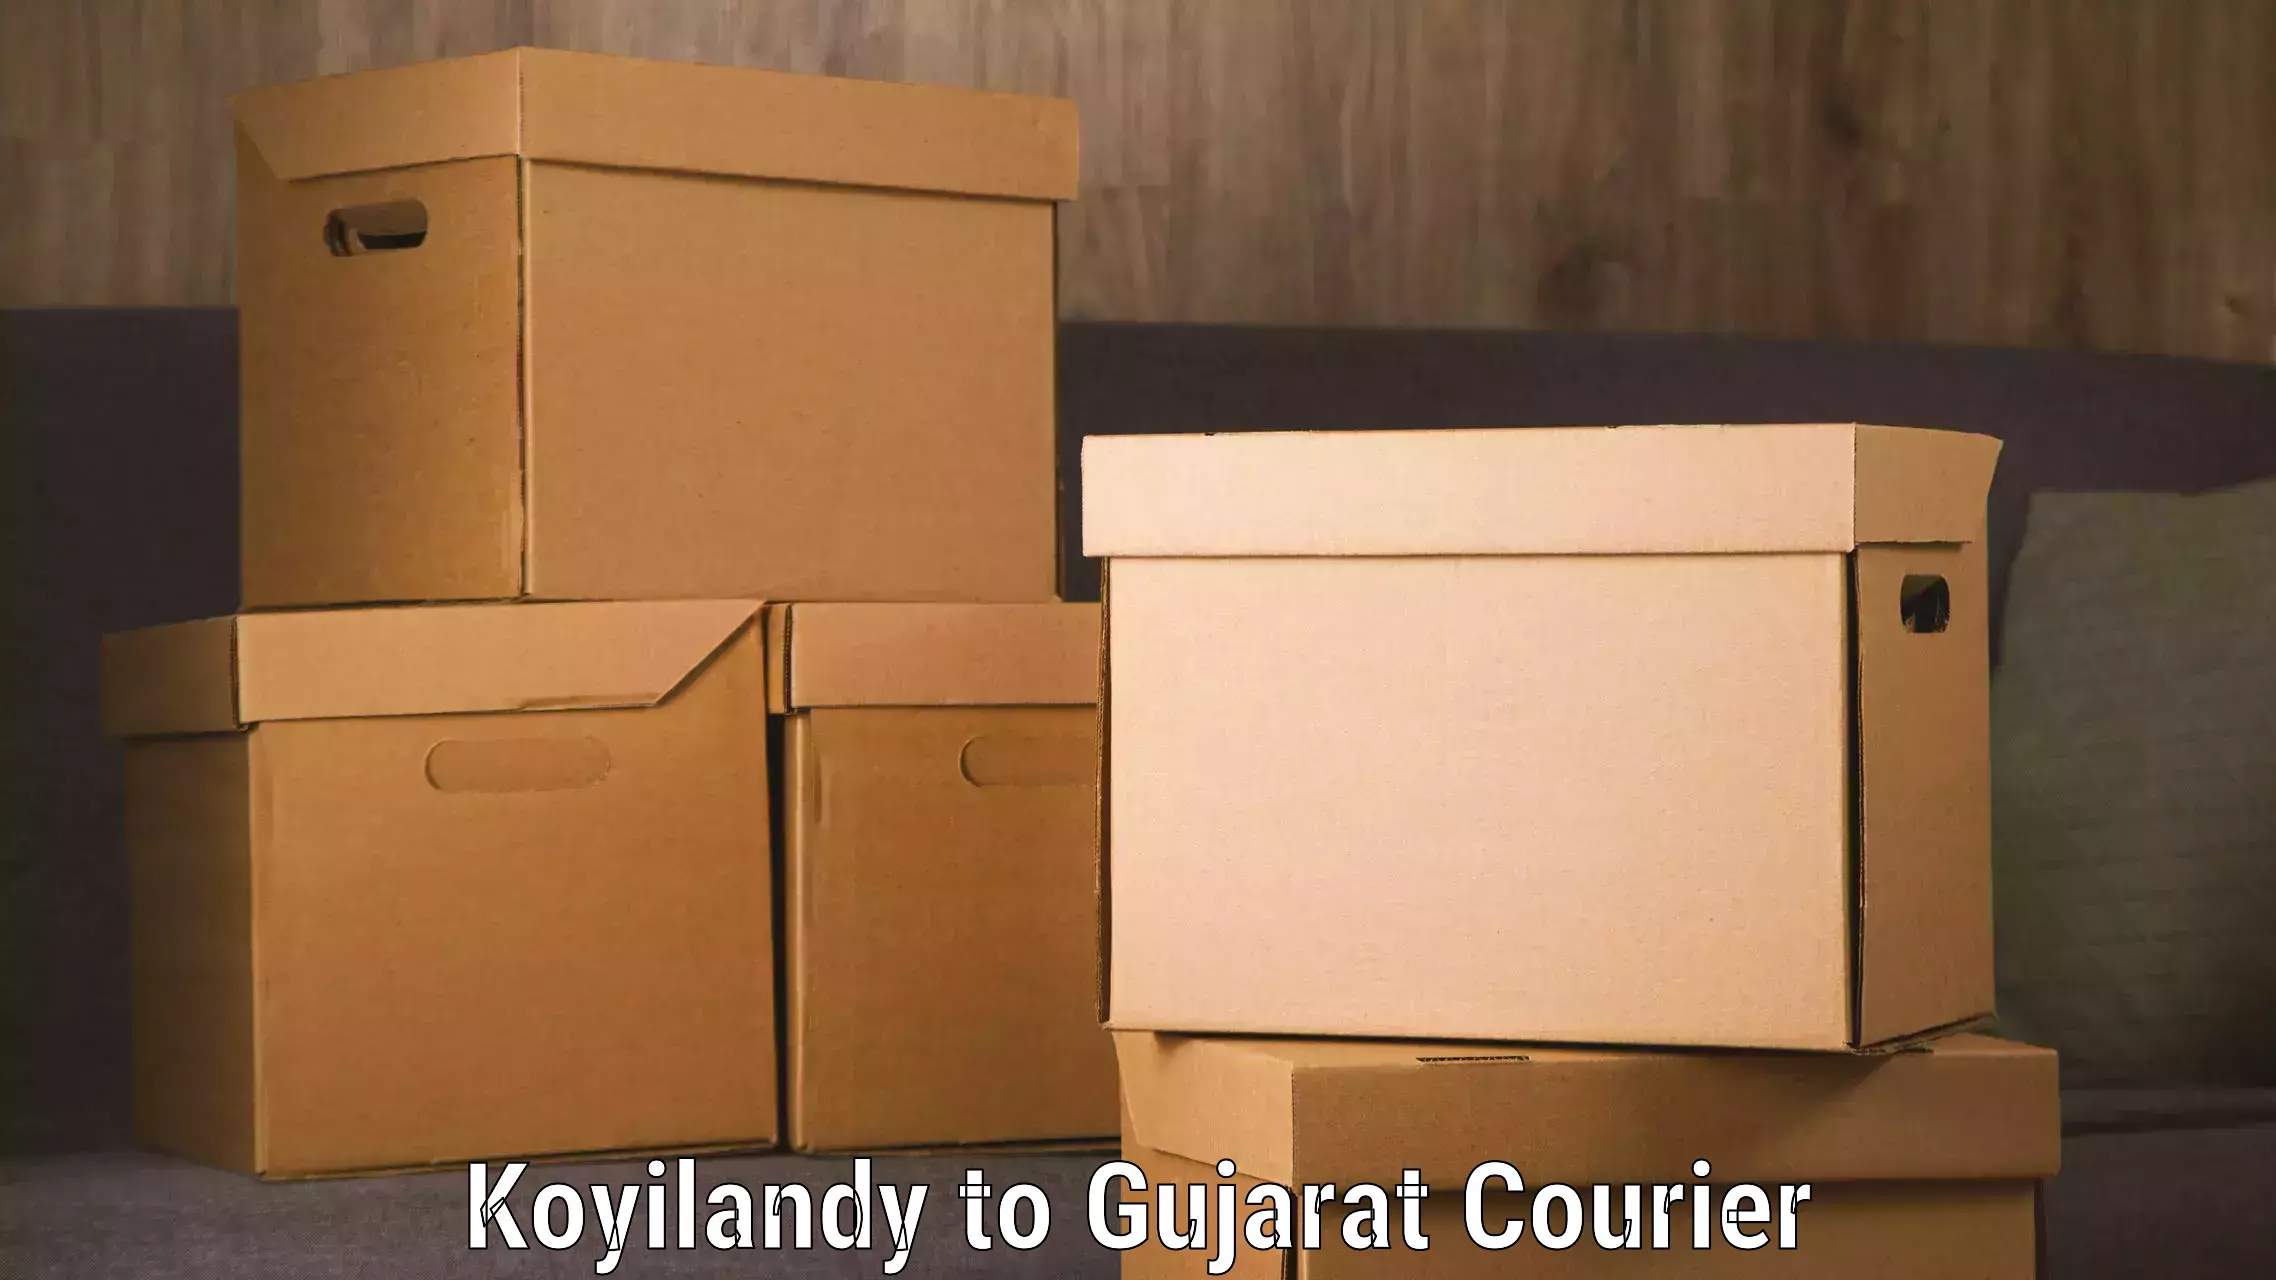 Personal parcel delivery in Koyilandy to Gujarat